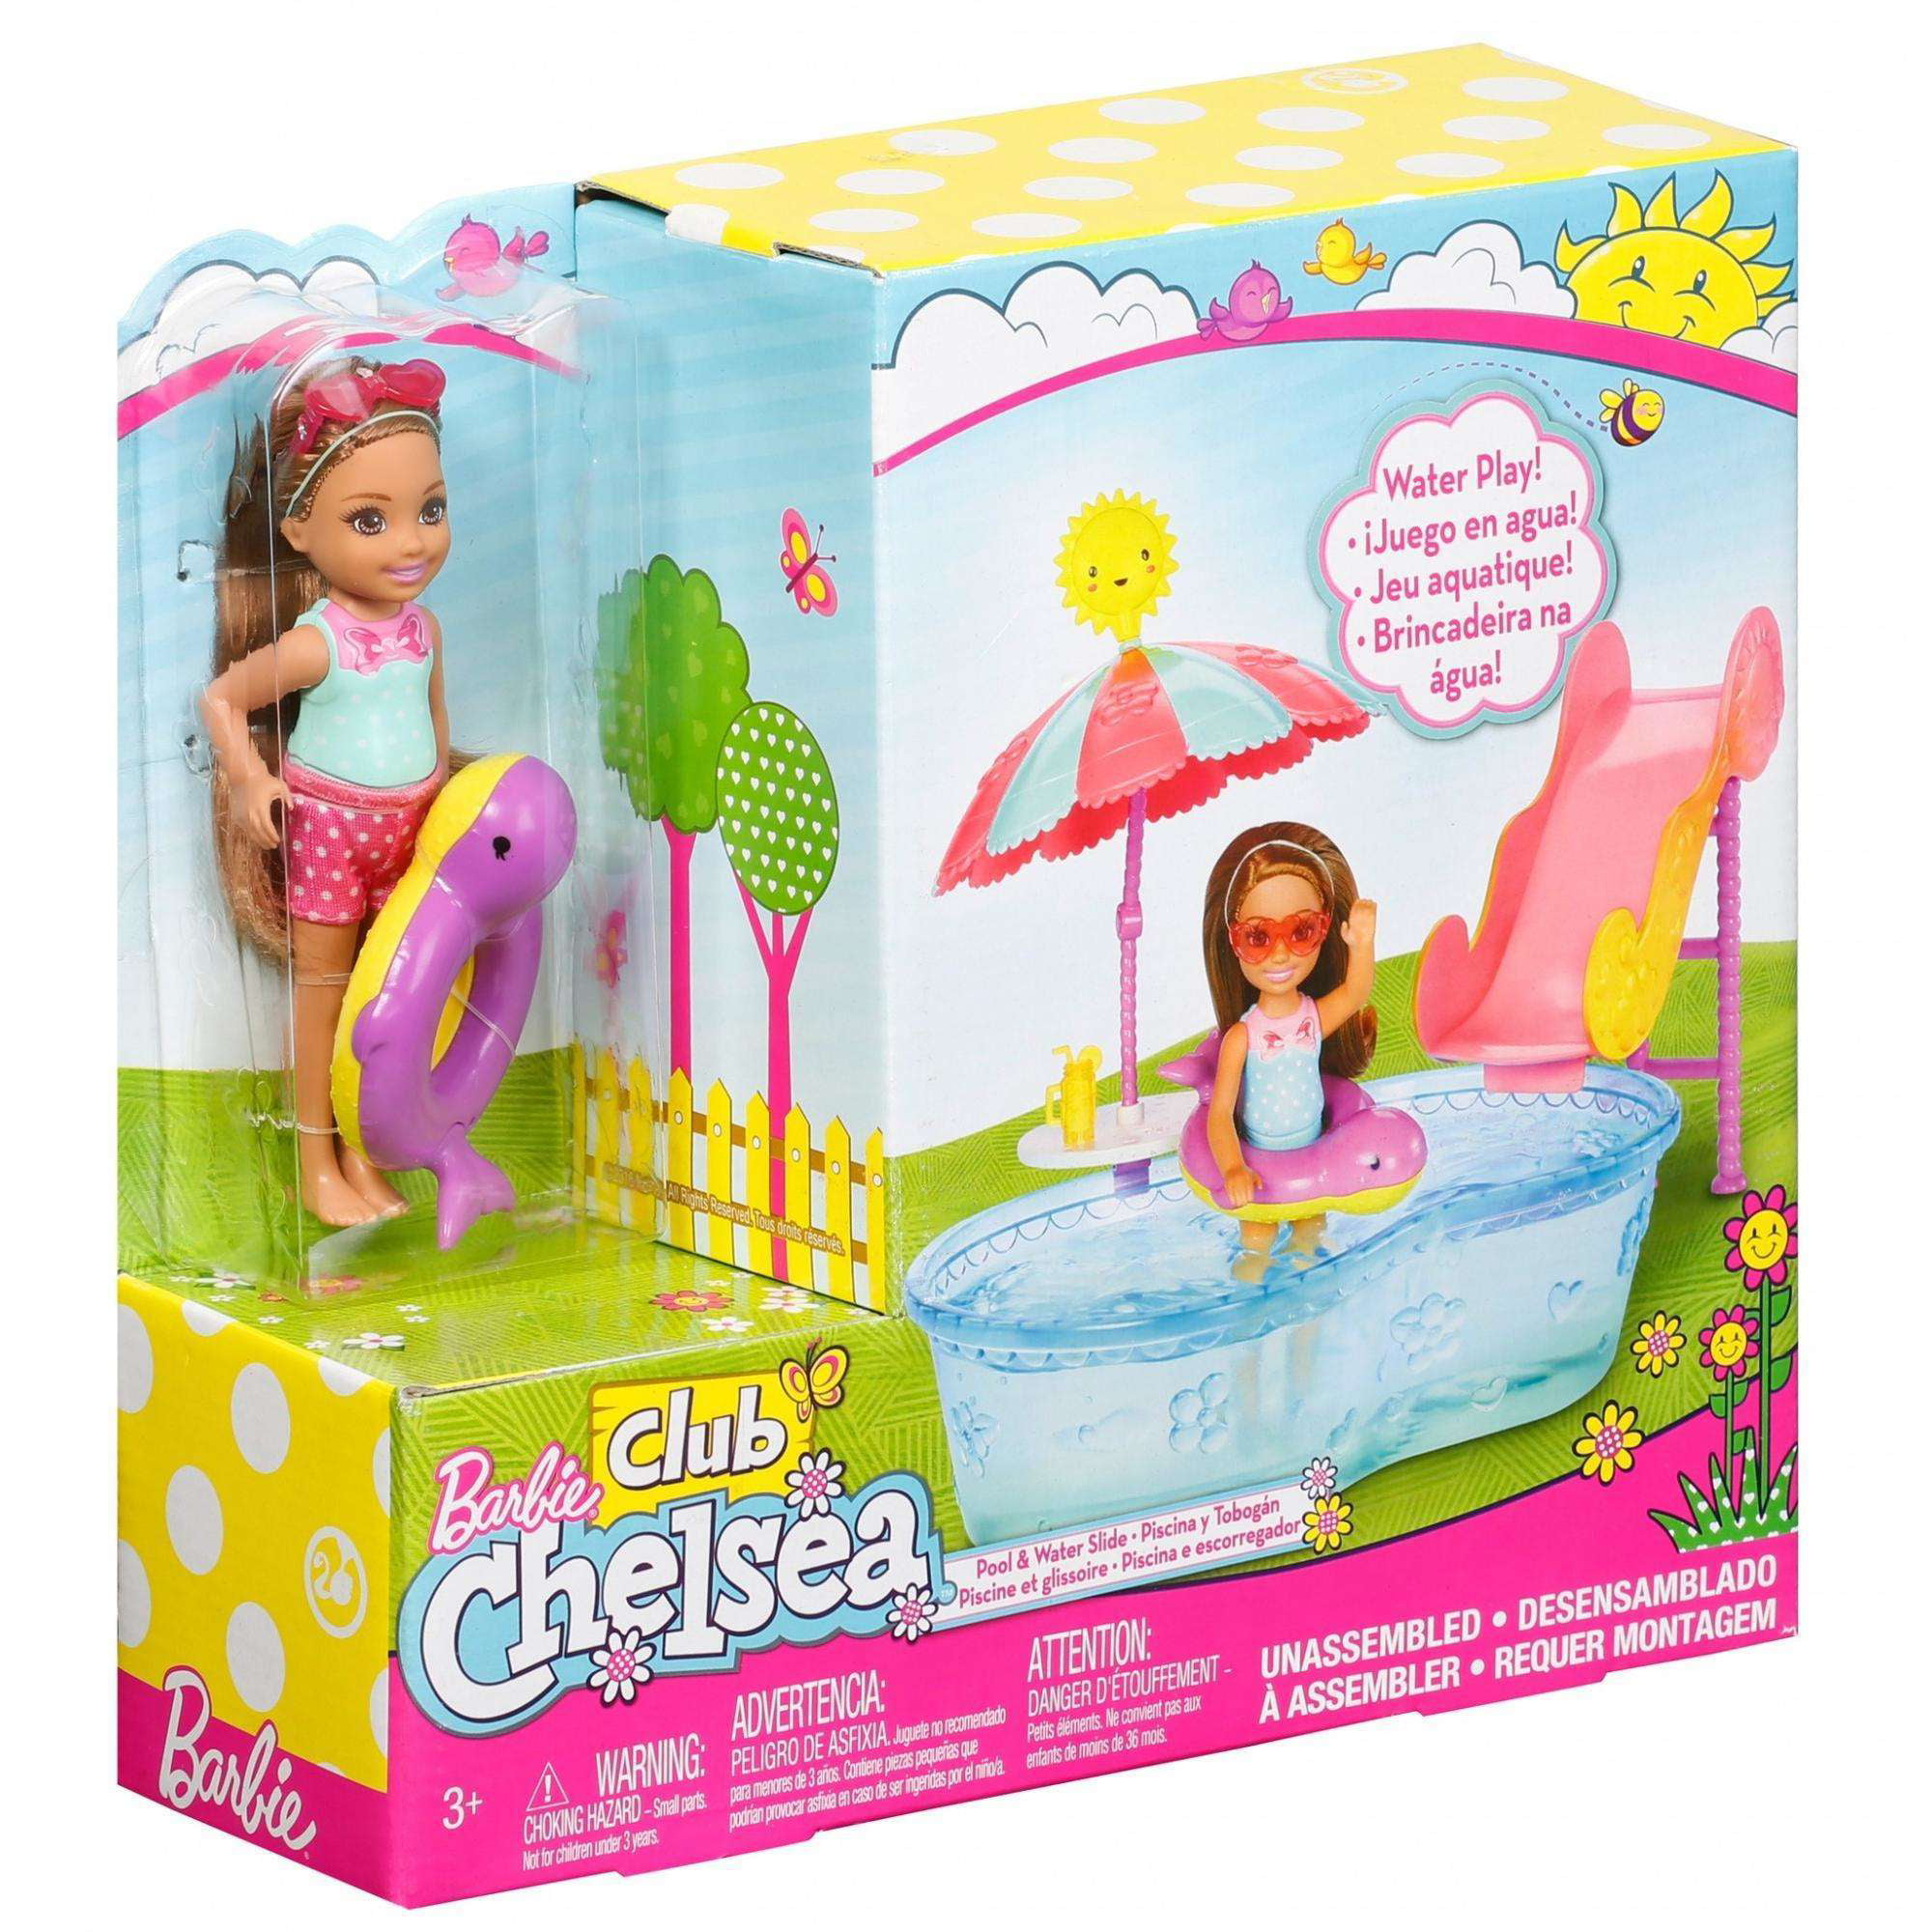 Barbie Club Chelsea Pool & Water Slide 